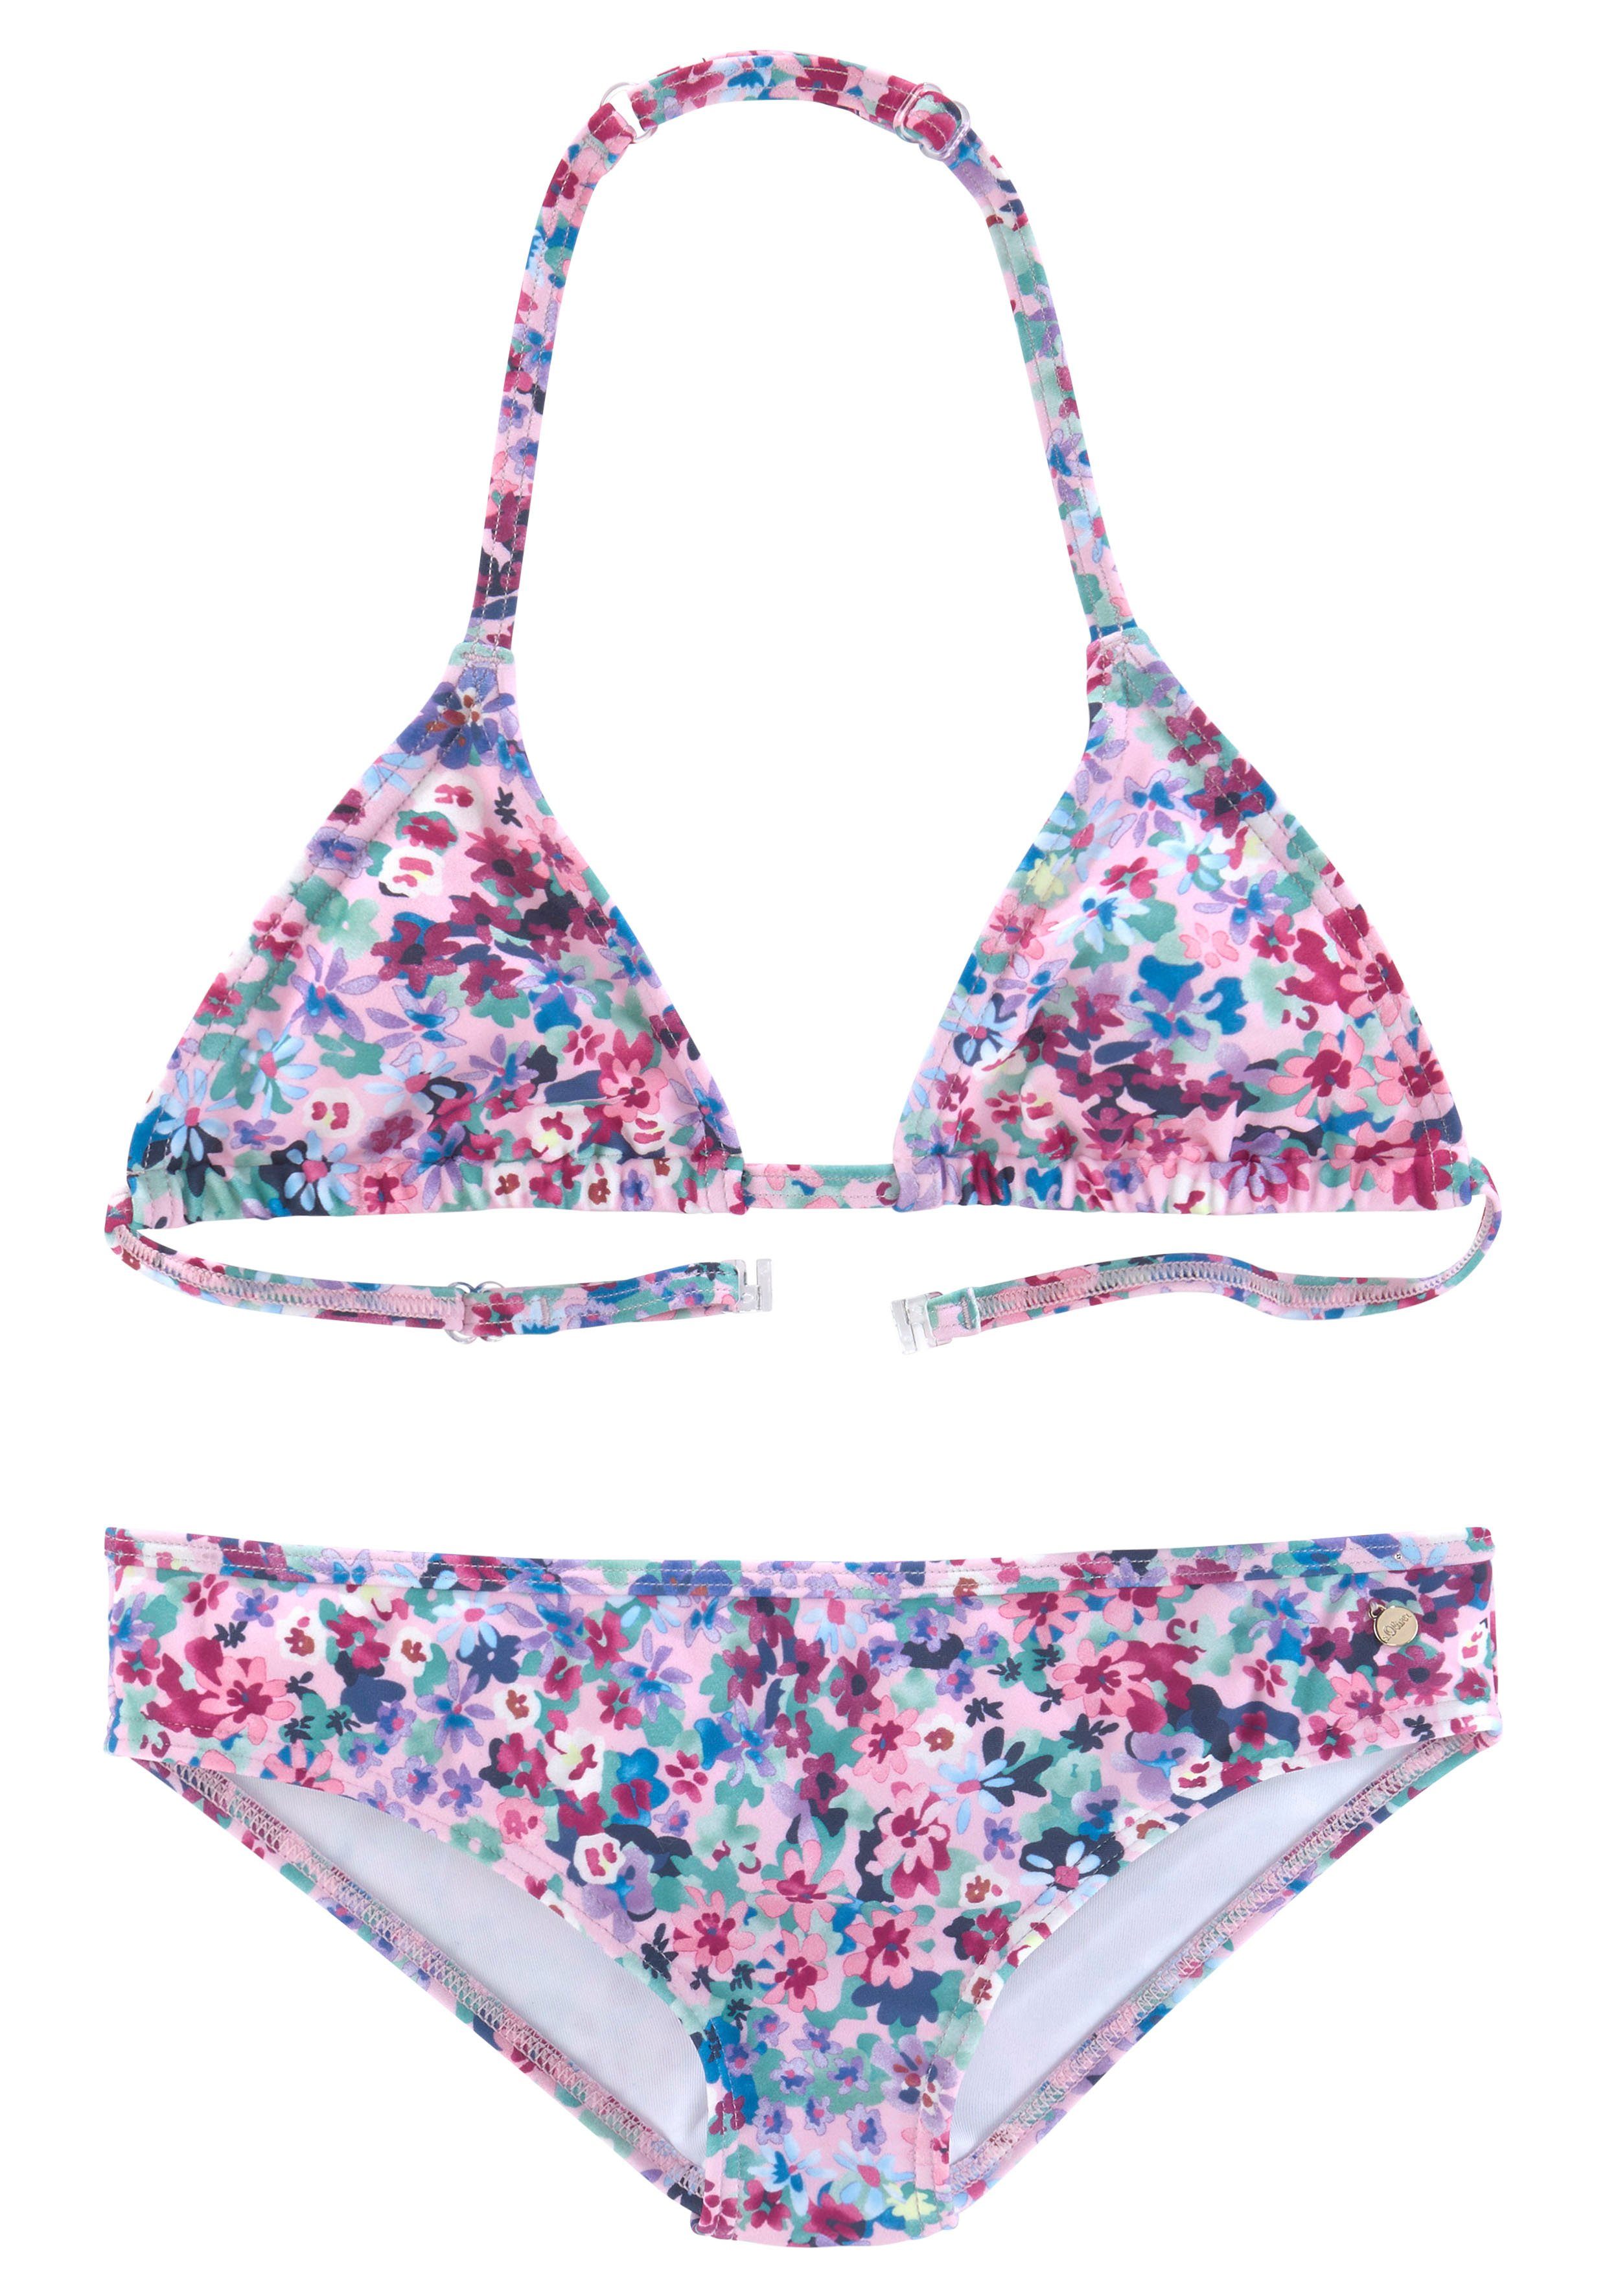 Blumendruck s.Oliver Triangel-Bikini mit sommerlichem